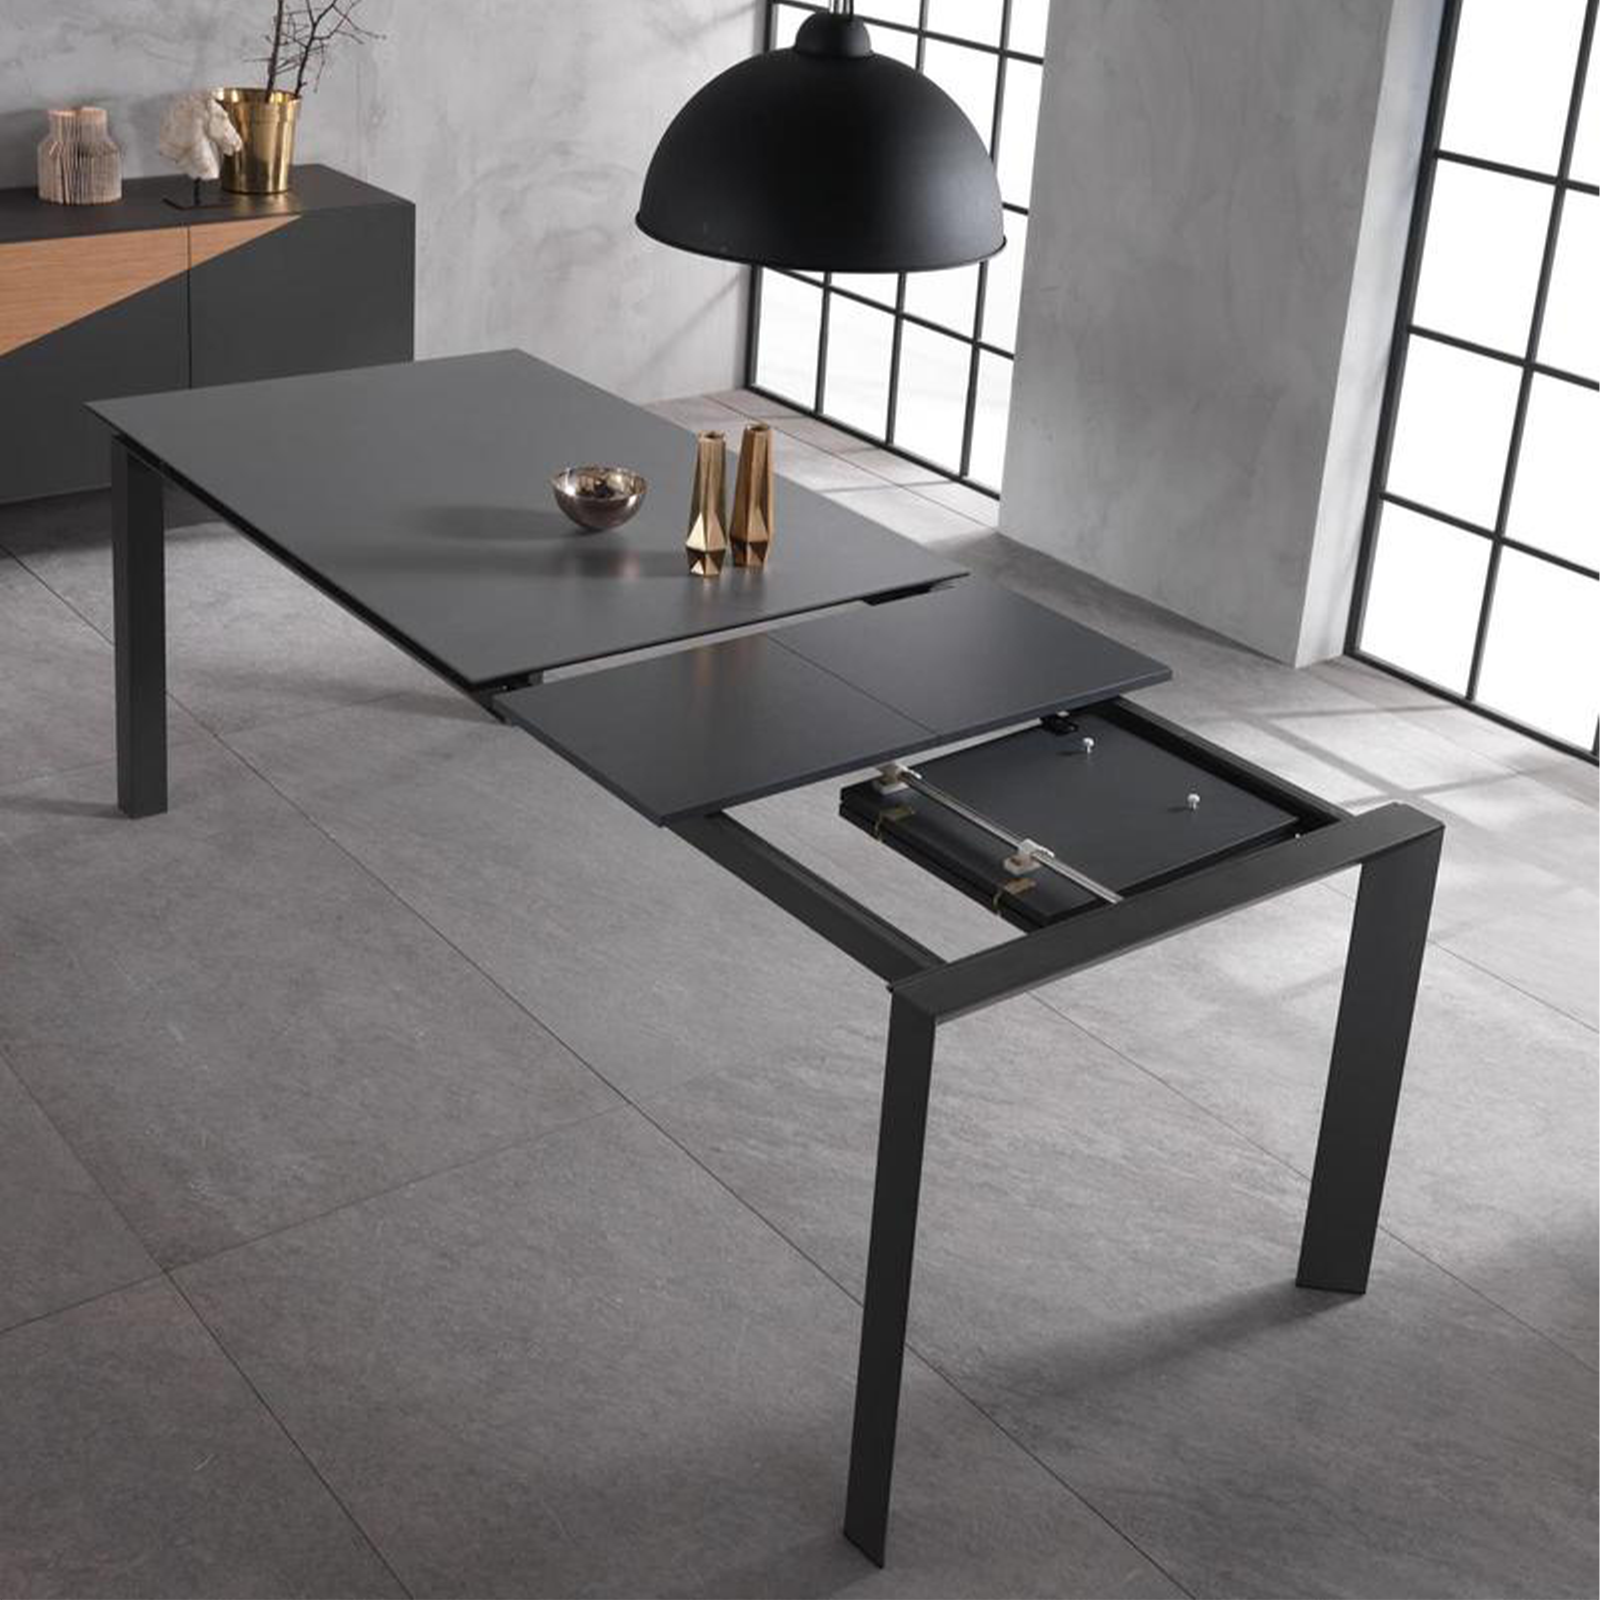 Table extensible "Compte" plateau céramique pieds aluminium 140/220x90 cm 75h